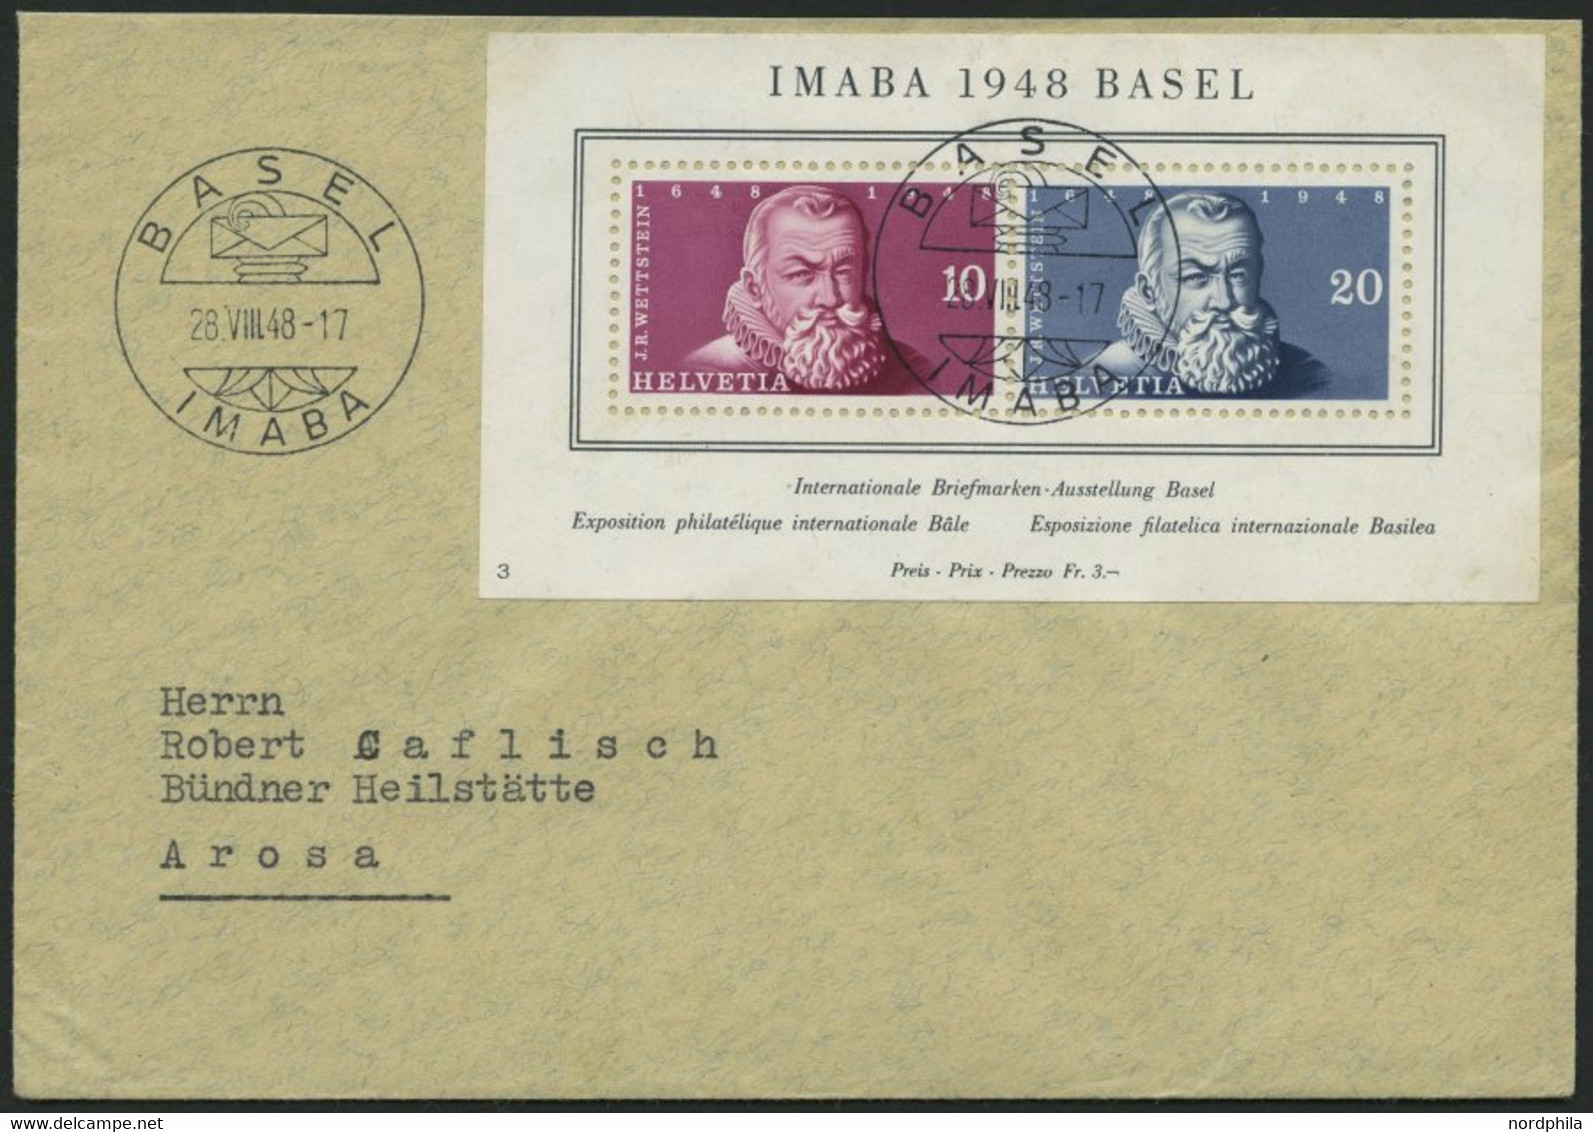 SCHWEIZ BUNDESPOST Bl. 13 BRIEF, 1948, Block IMABA Mit Sonderstempel Auf Brief, Pracht - Covers & Documents